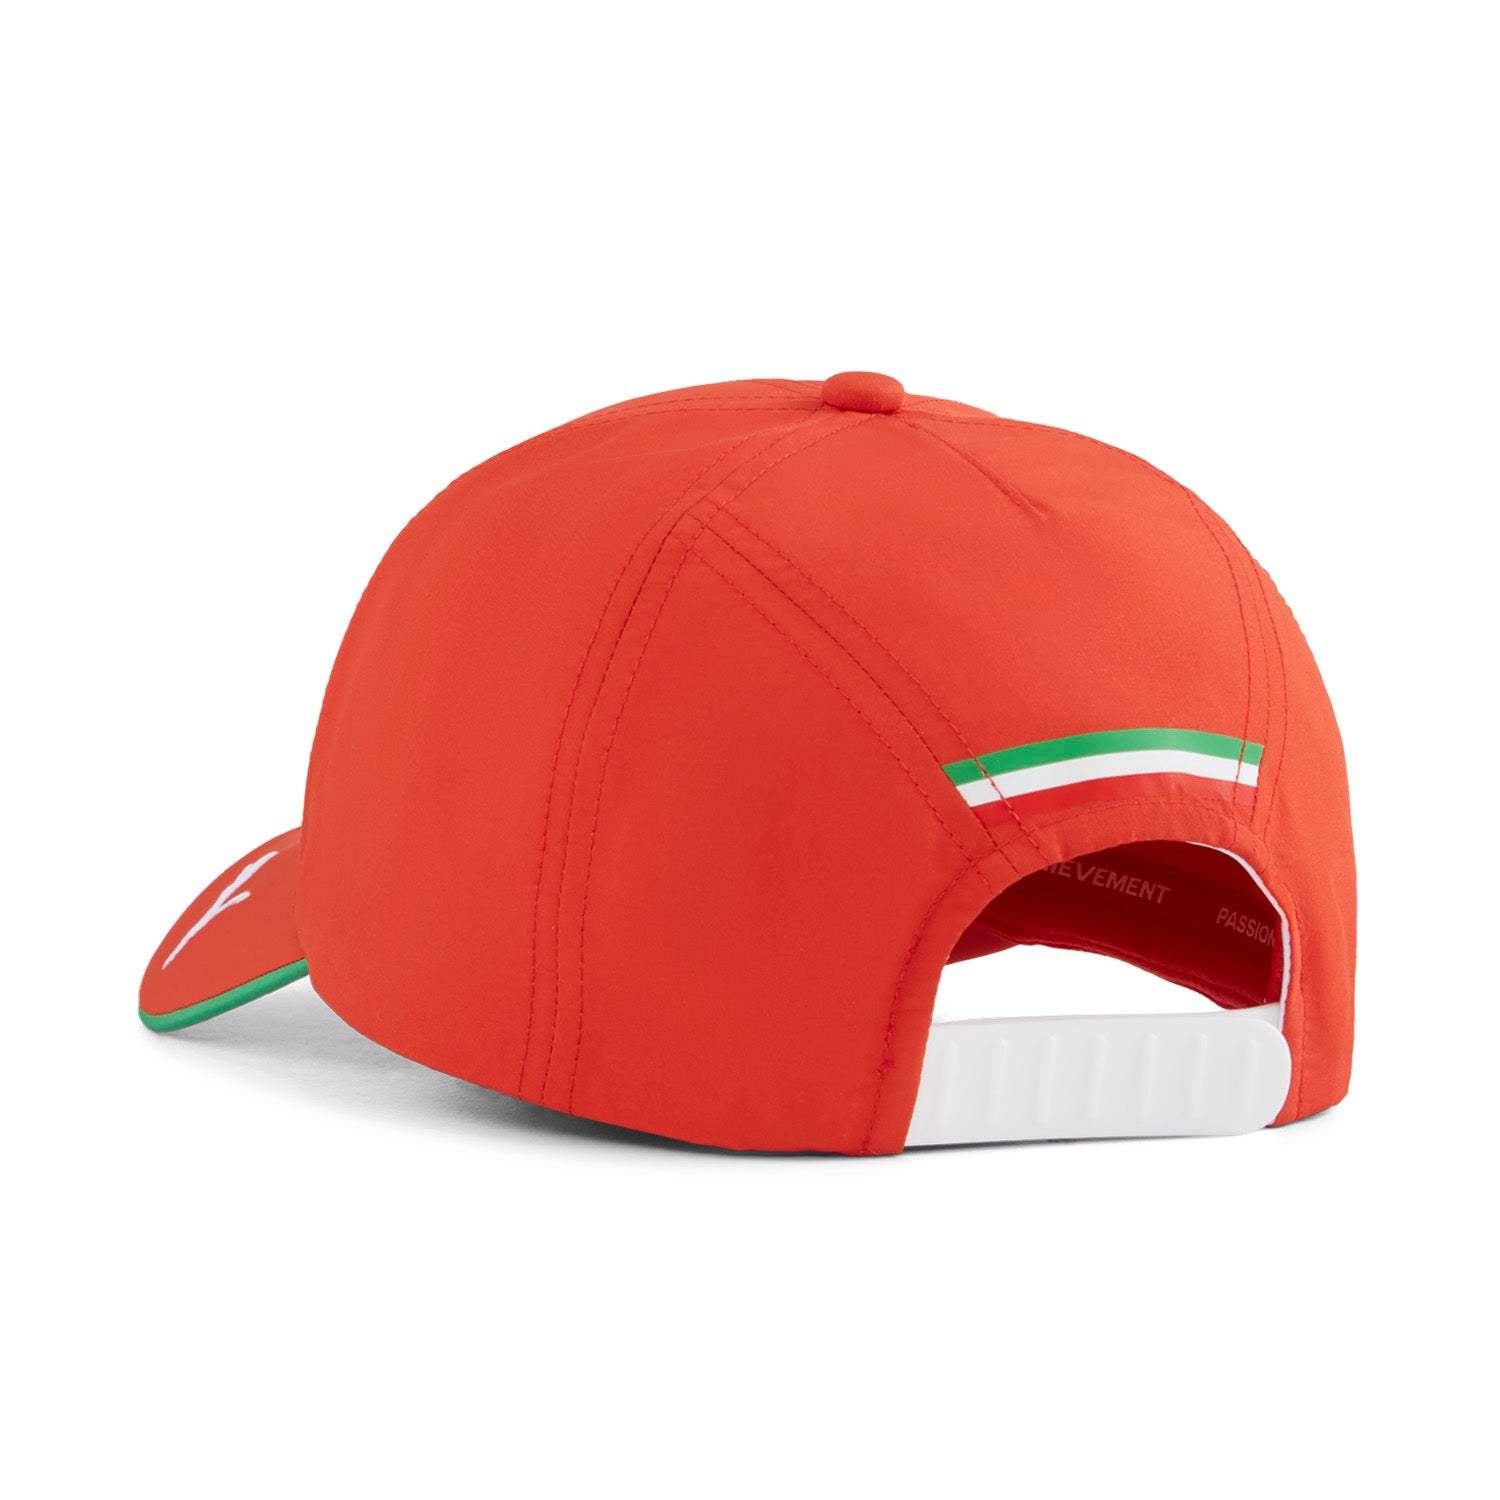 2024 Team Cap - Scuderia Ferrari - Fueler store